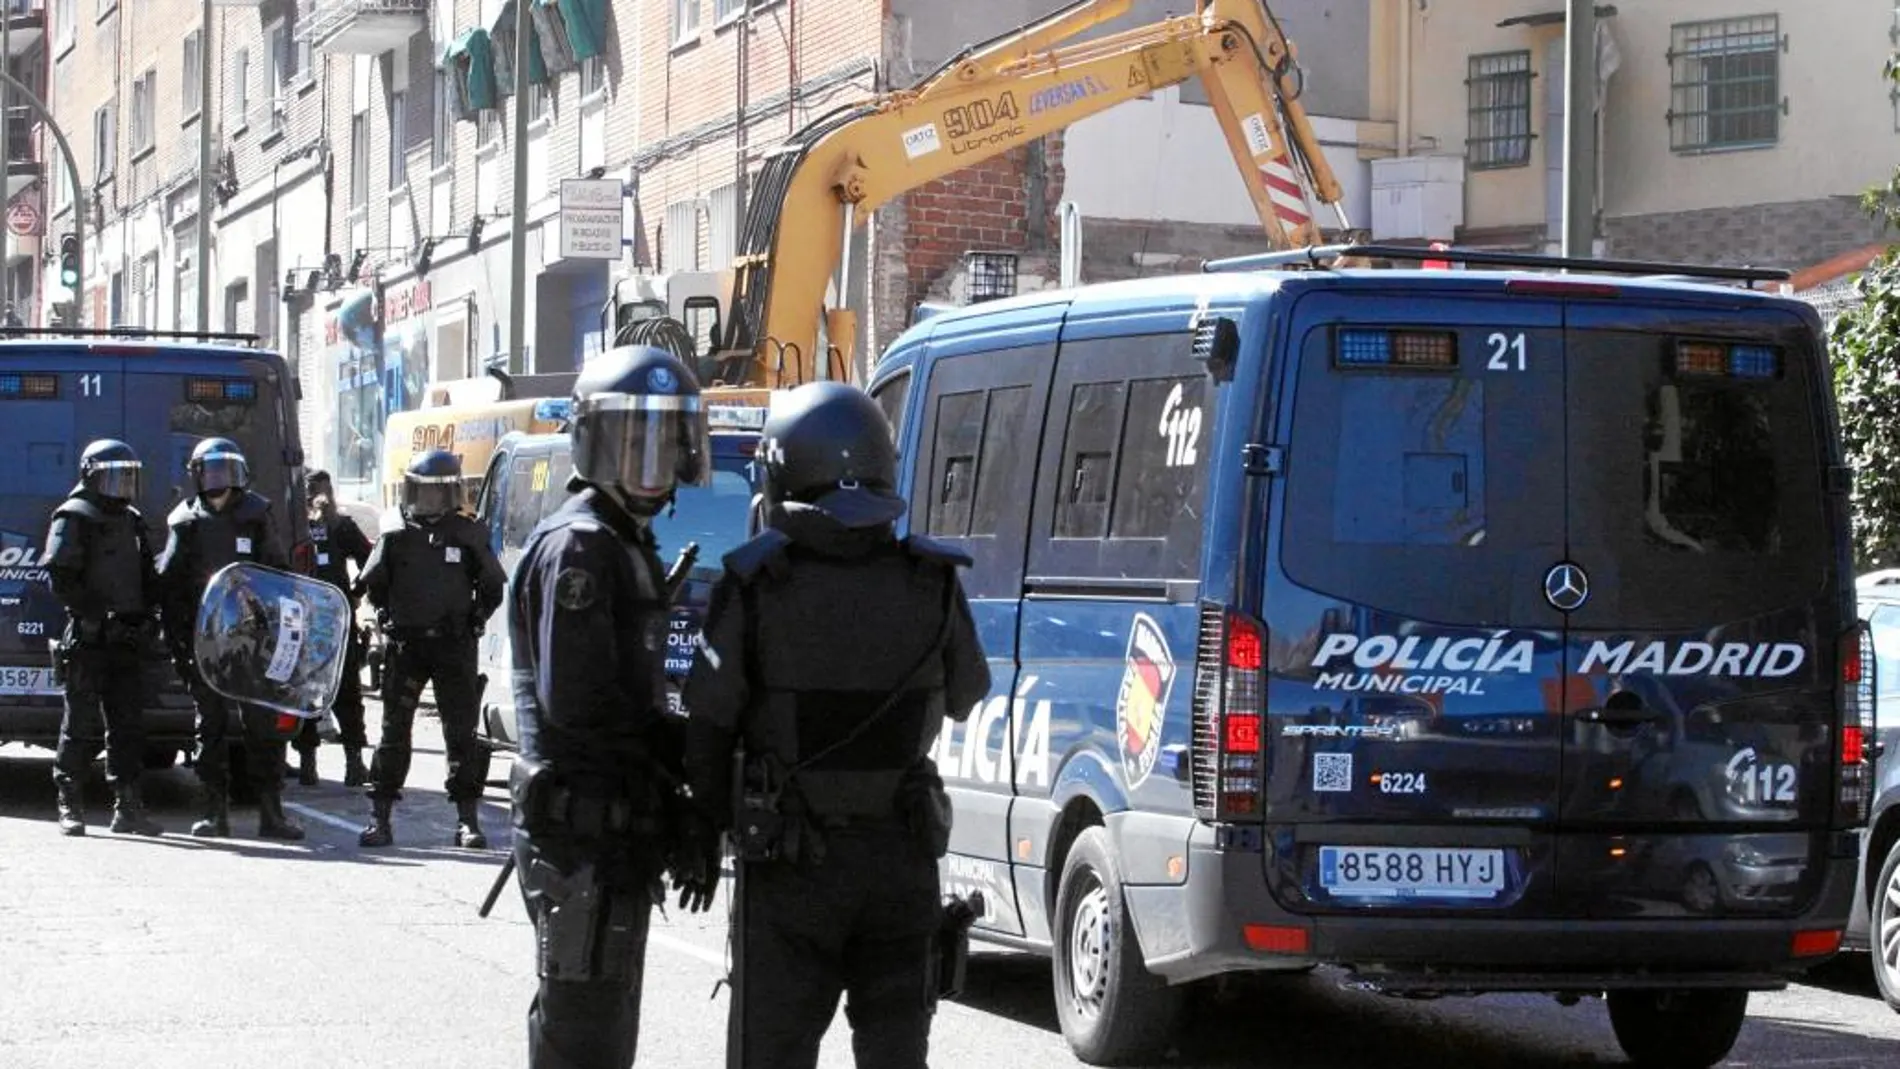 Las Unidades Centrales de Seguridad de la Policía Municipal de Madrid fueron desmanteladas por Carmena en 2016